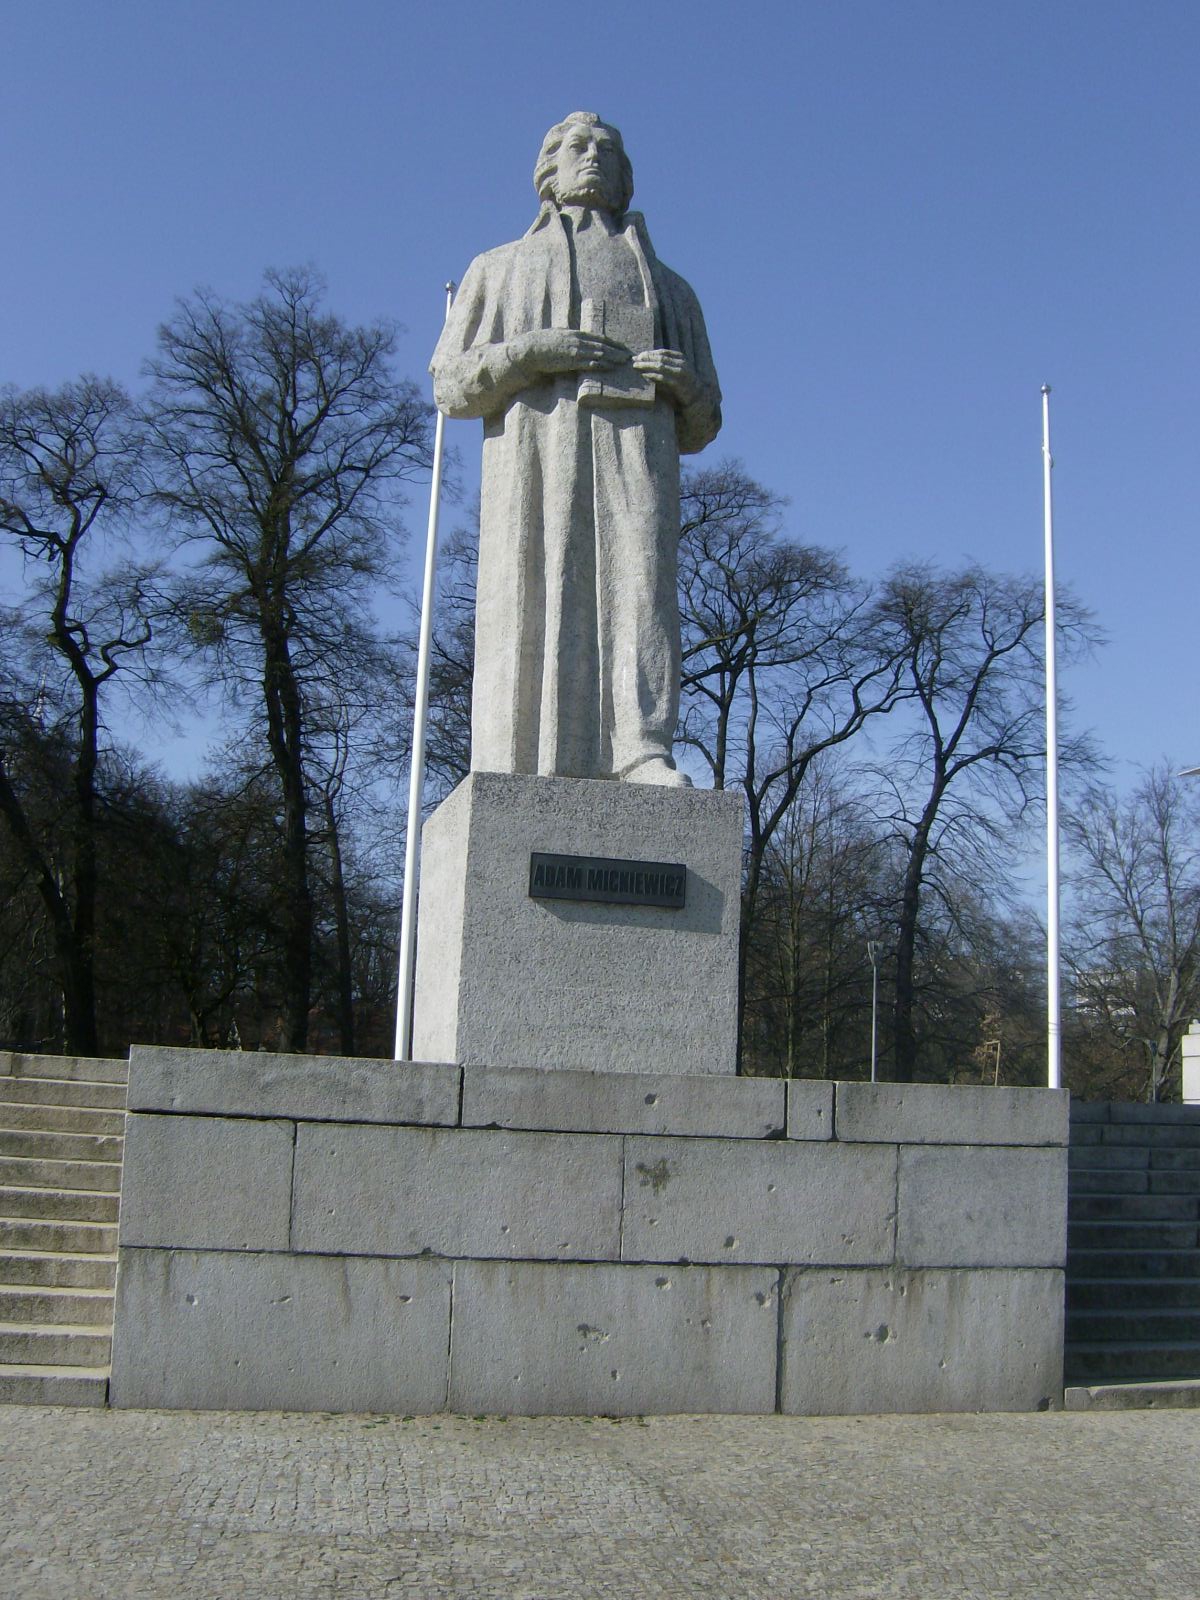 Farbfoto: Das Denkmal für den polnischen Dichter Adam Bernhard Mickiewicz in Stettin in Polen im März des Jahres 2012. Fotograf: R.I.